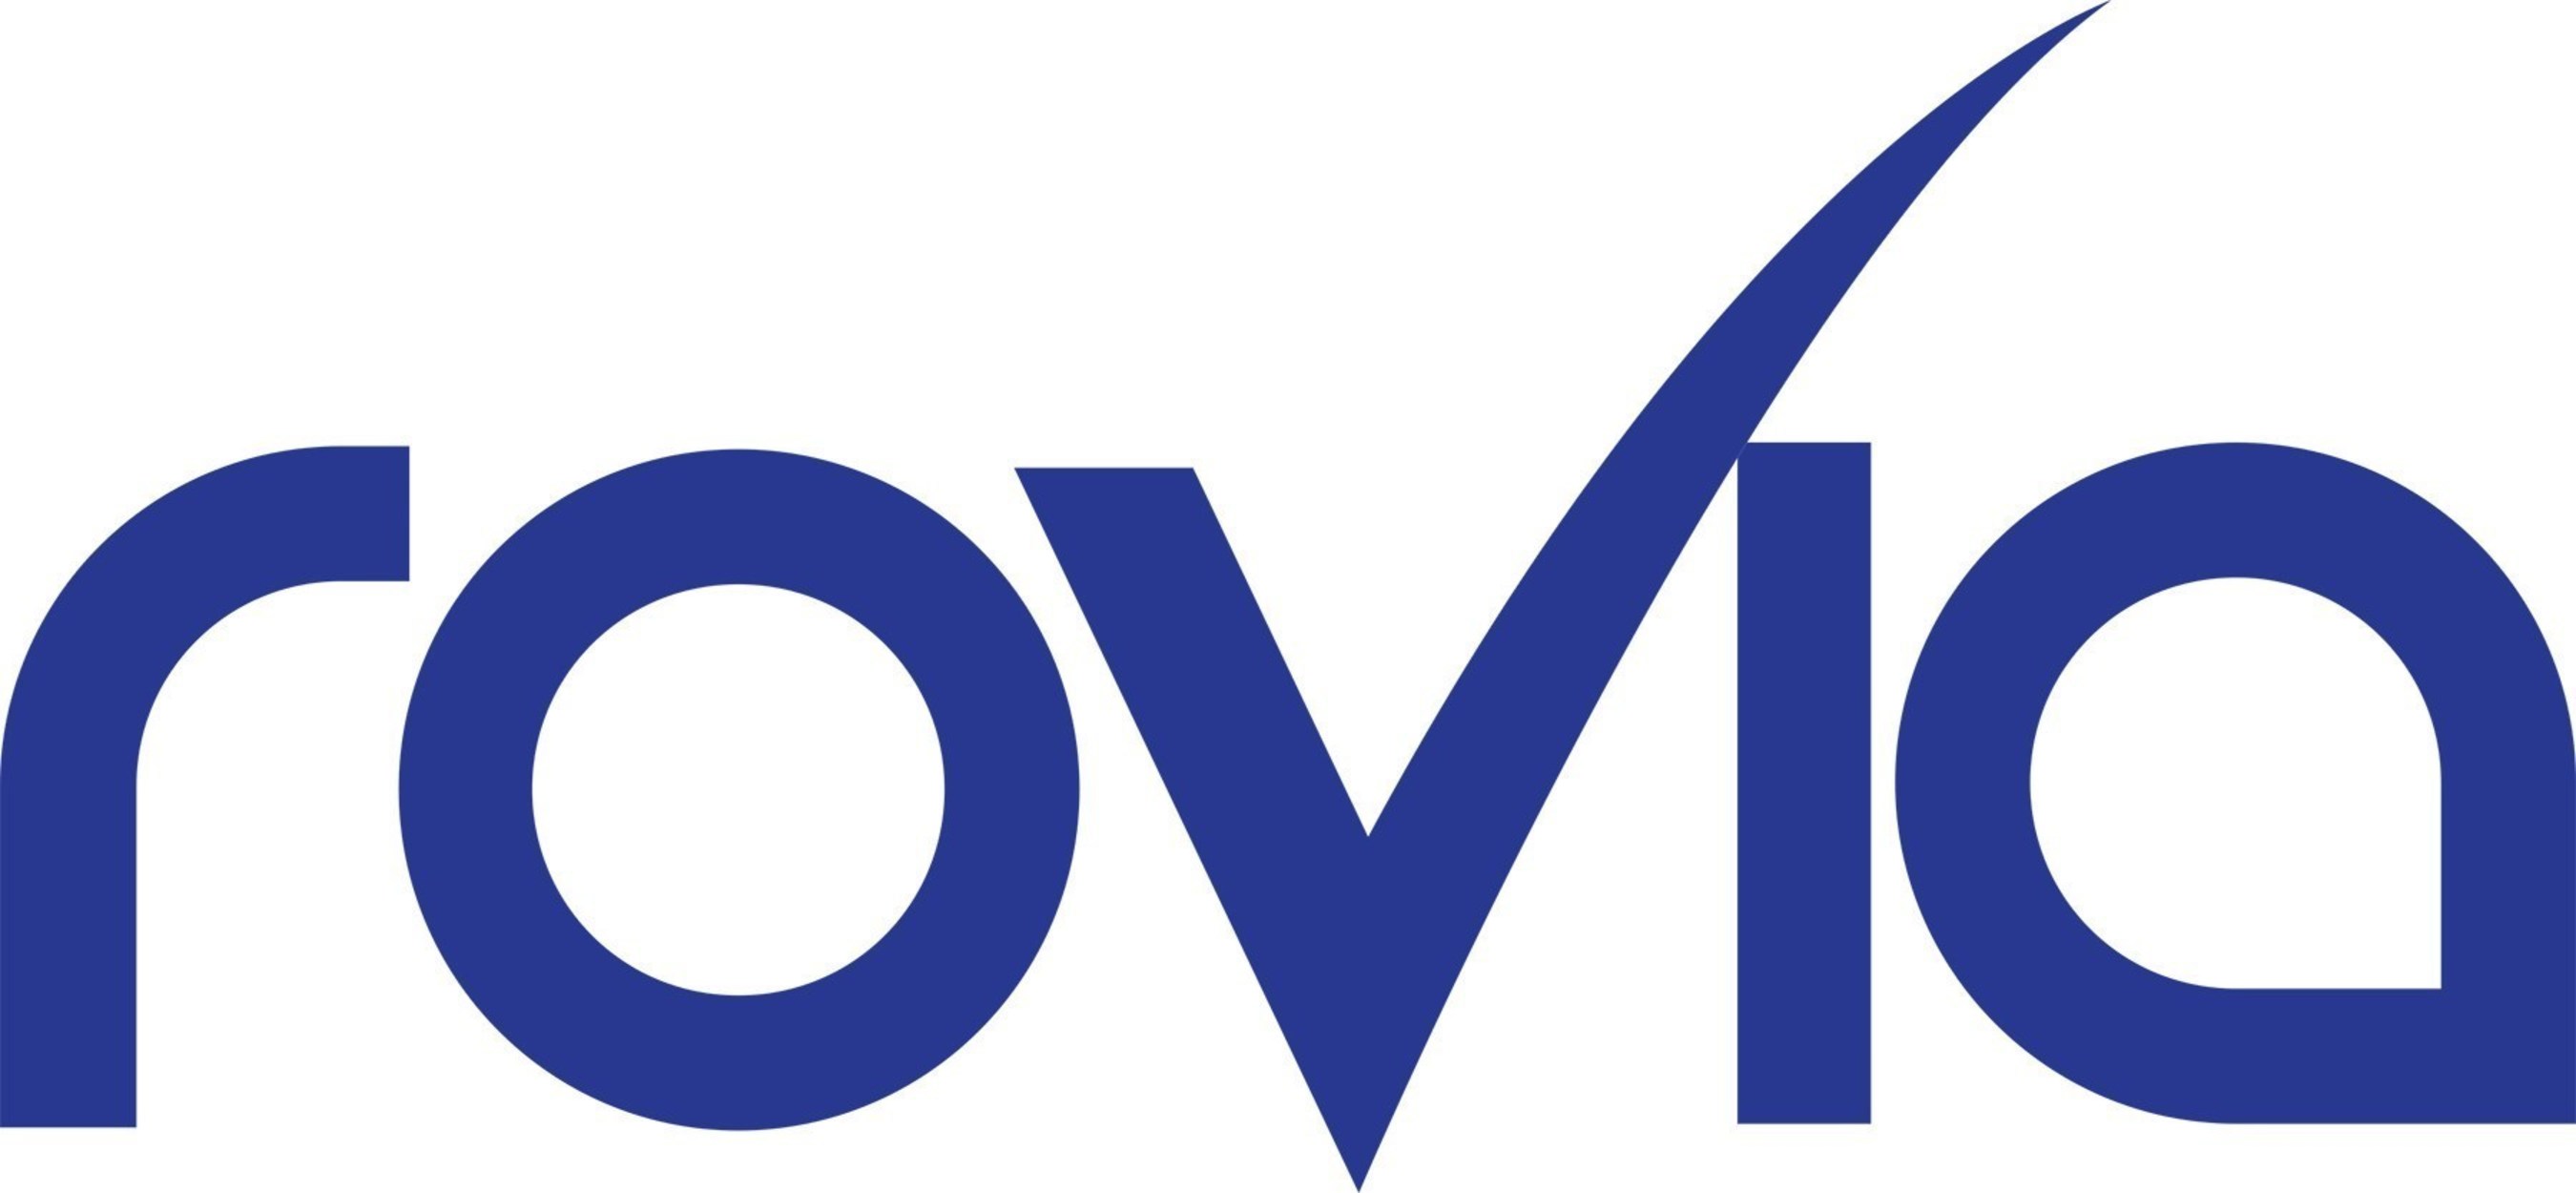 Rovia official logo